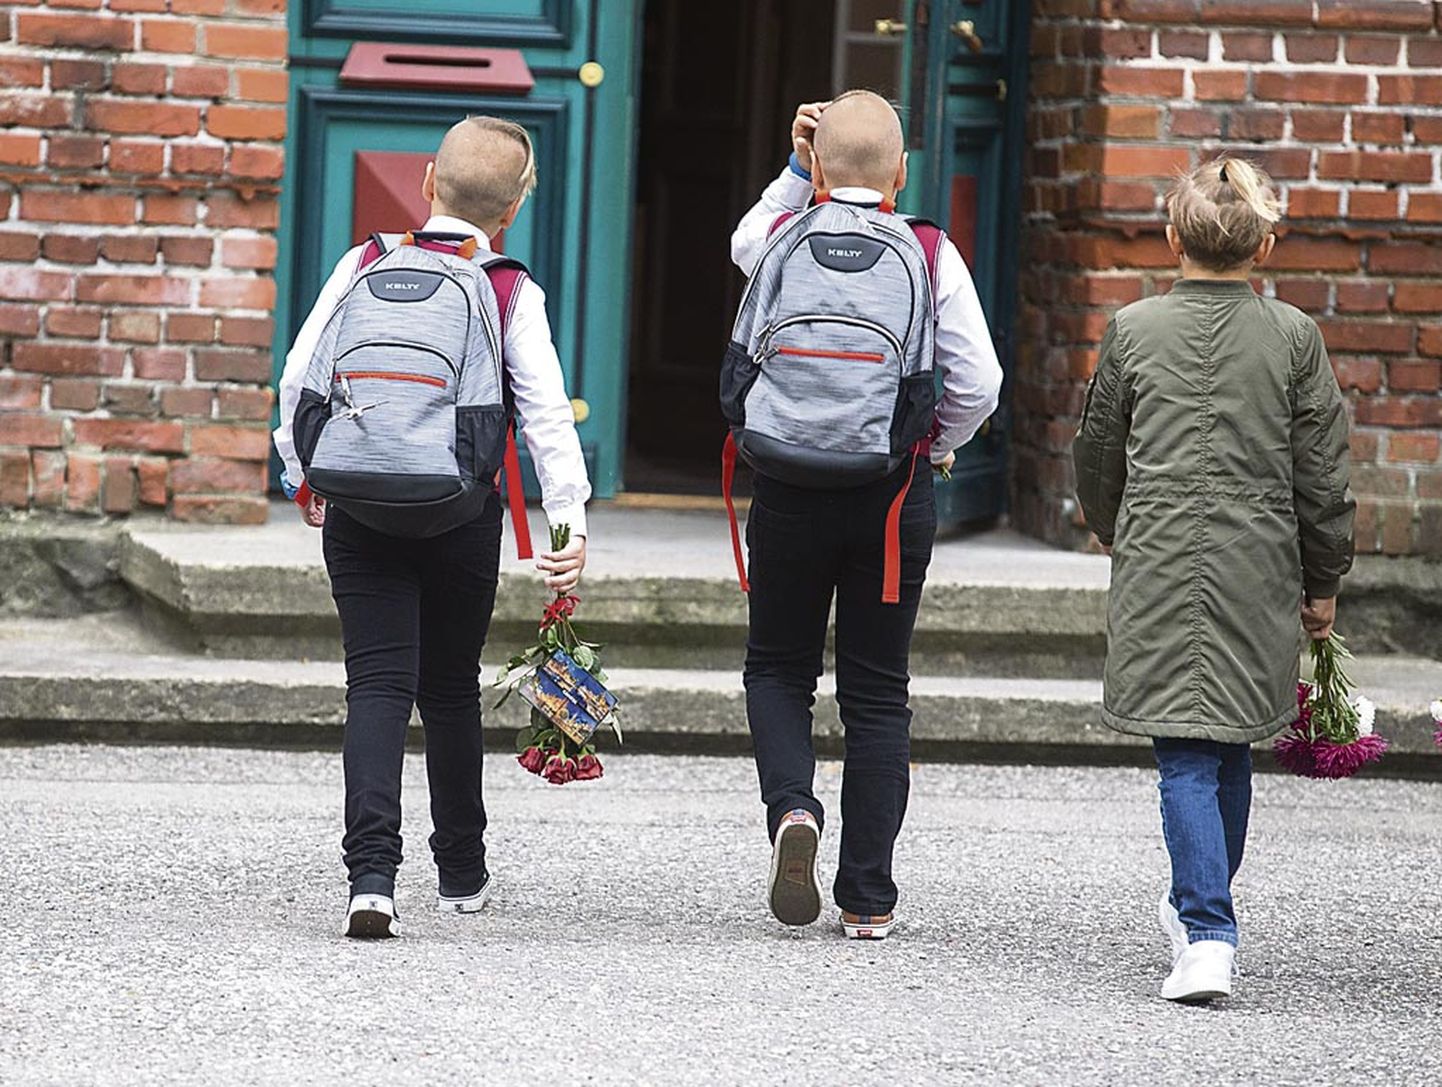 Kuigi kõik osalised kinnitavad, et toetavad laste võimalust käia teisest omavalitsusest Pärnus põhikoolis, ei tagata seda õigust sugugi kõigile.